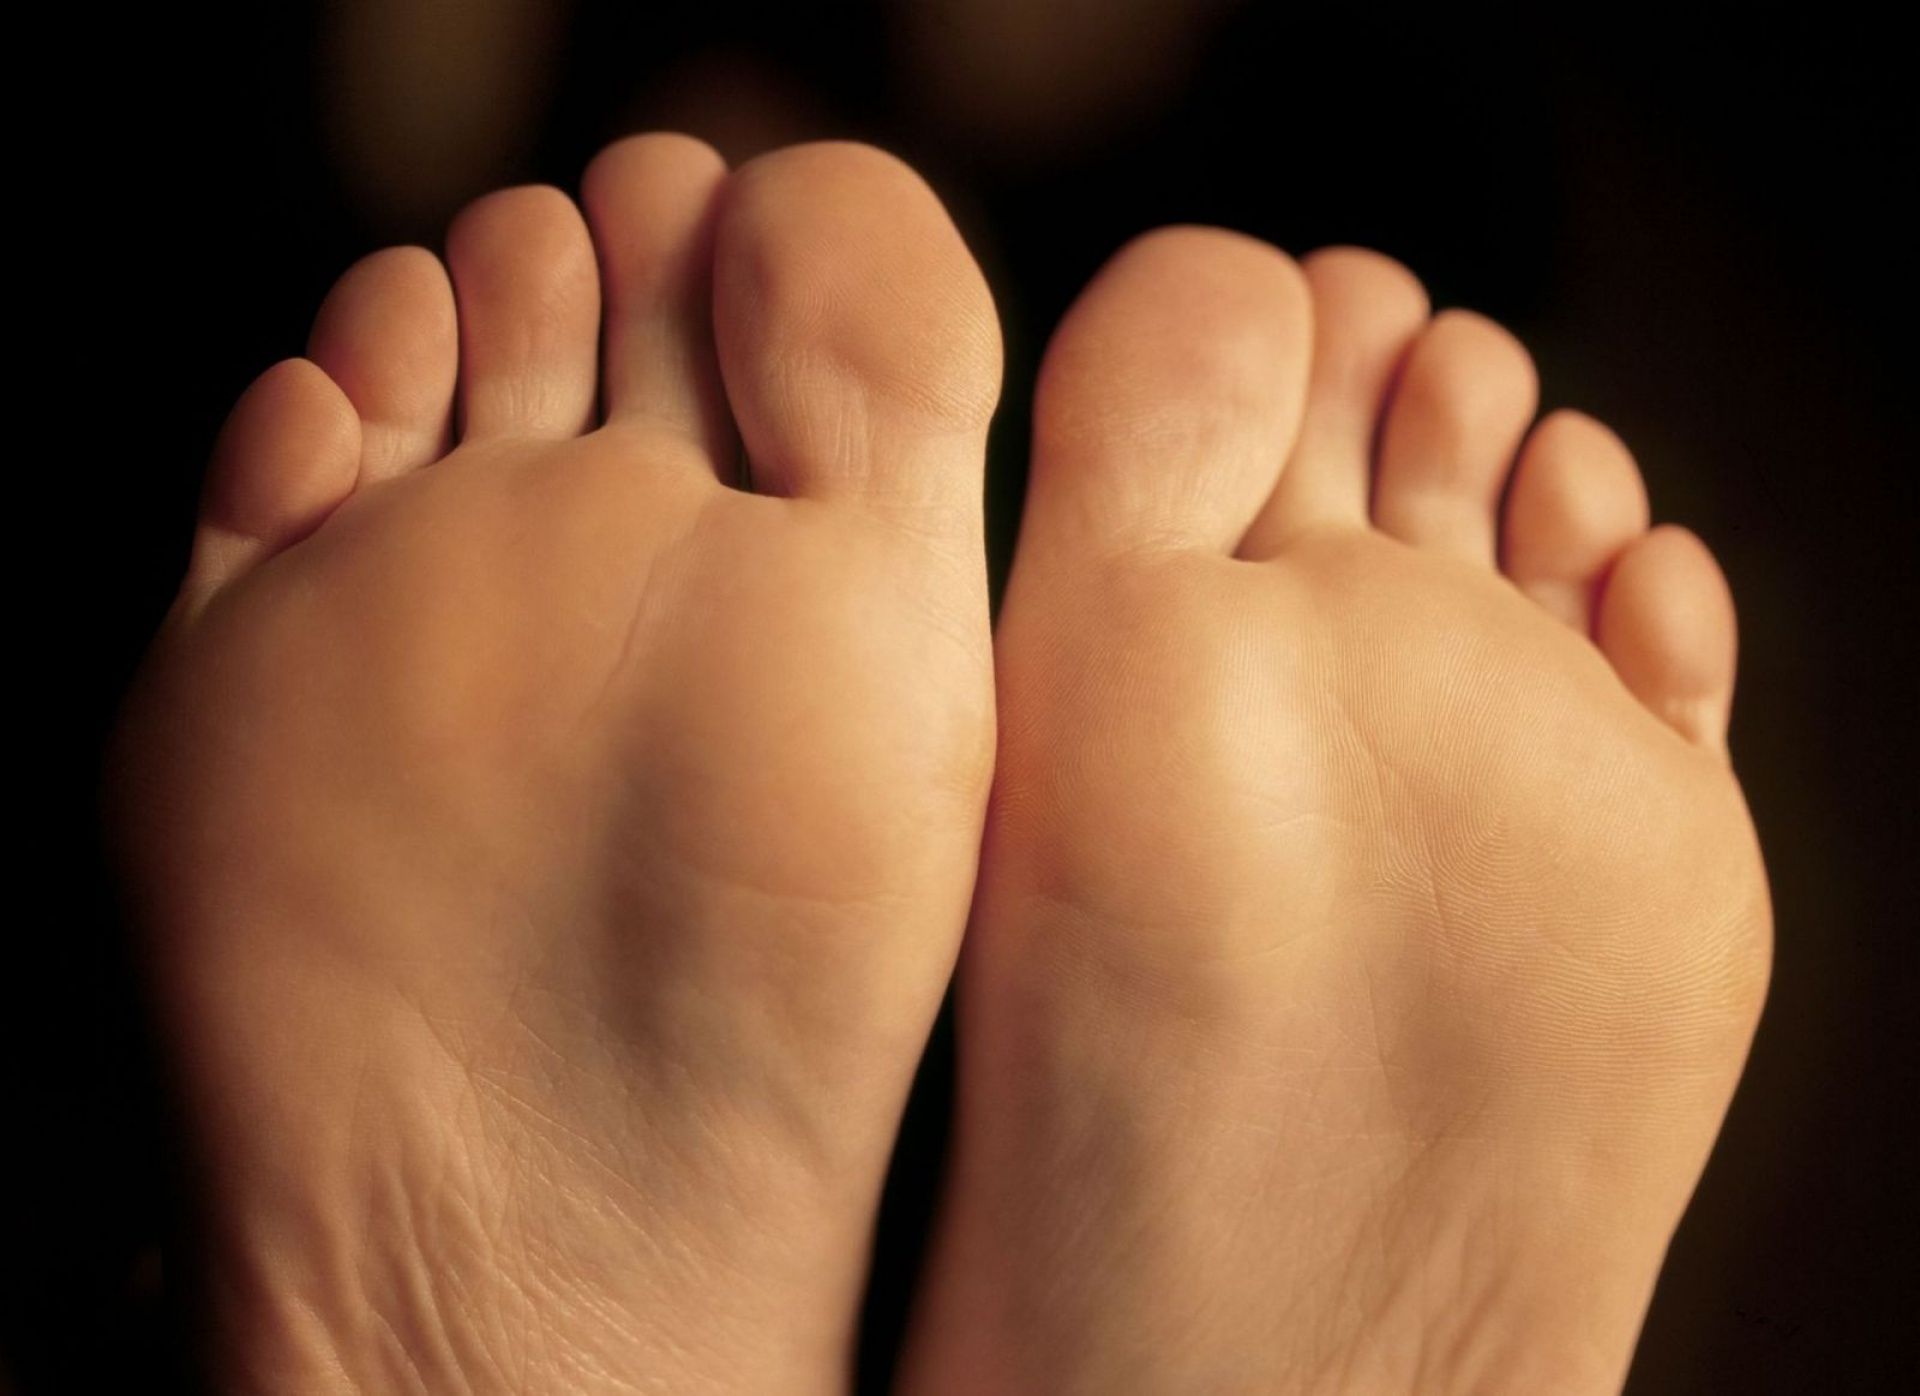 Psoriatic Arthritis Toes